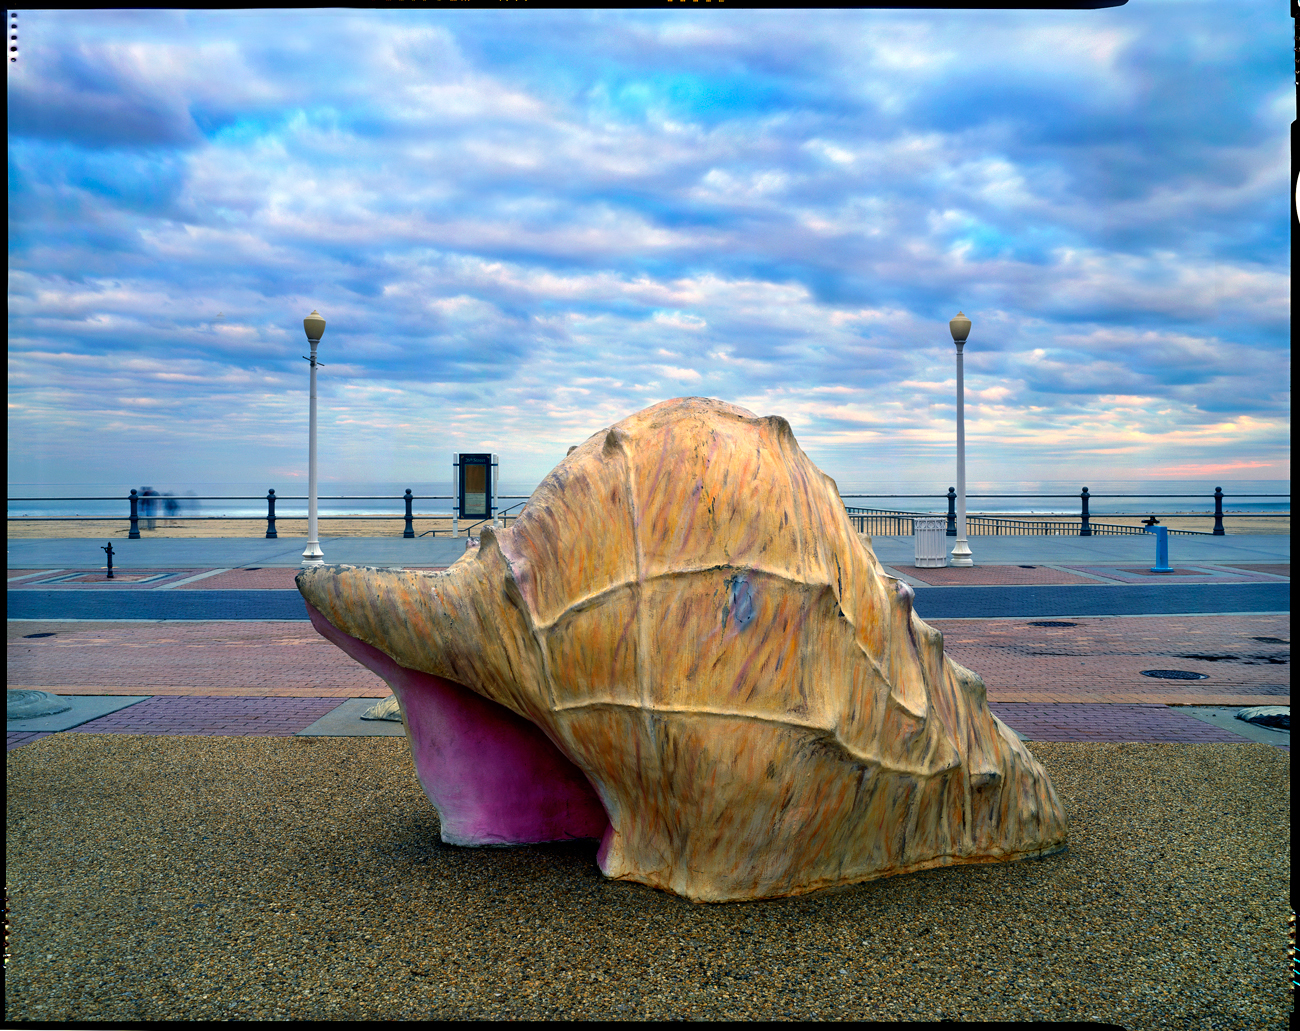 Concrete conch shell, Virginia Beach, Virginia, 2004